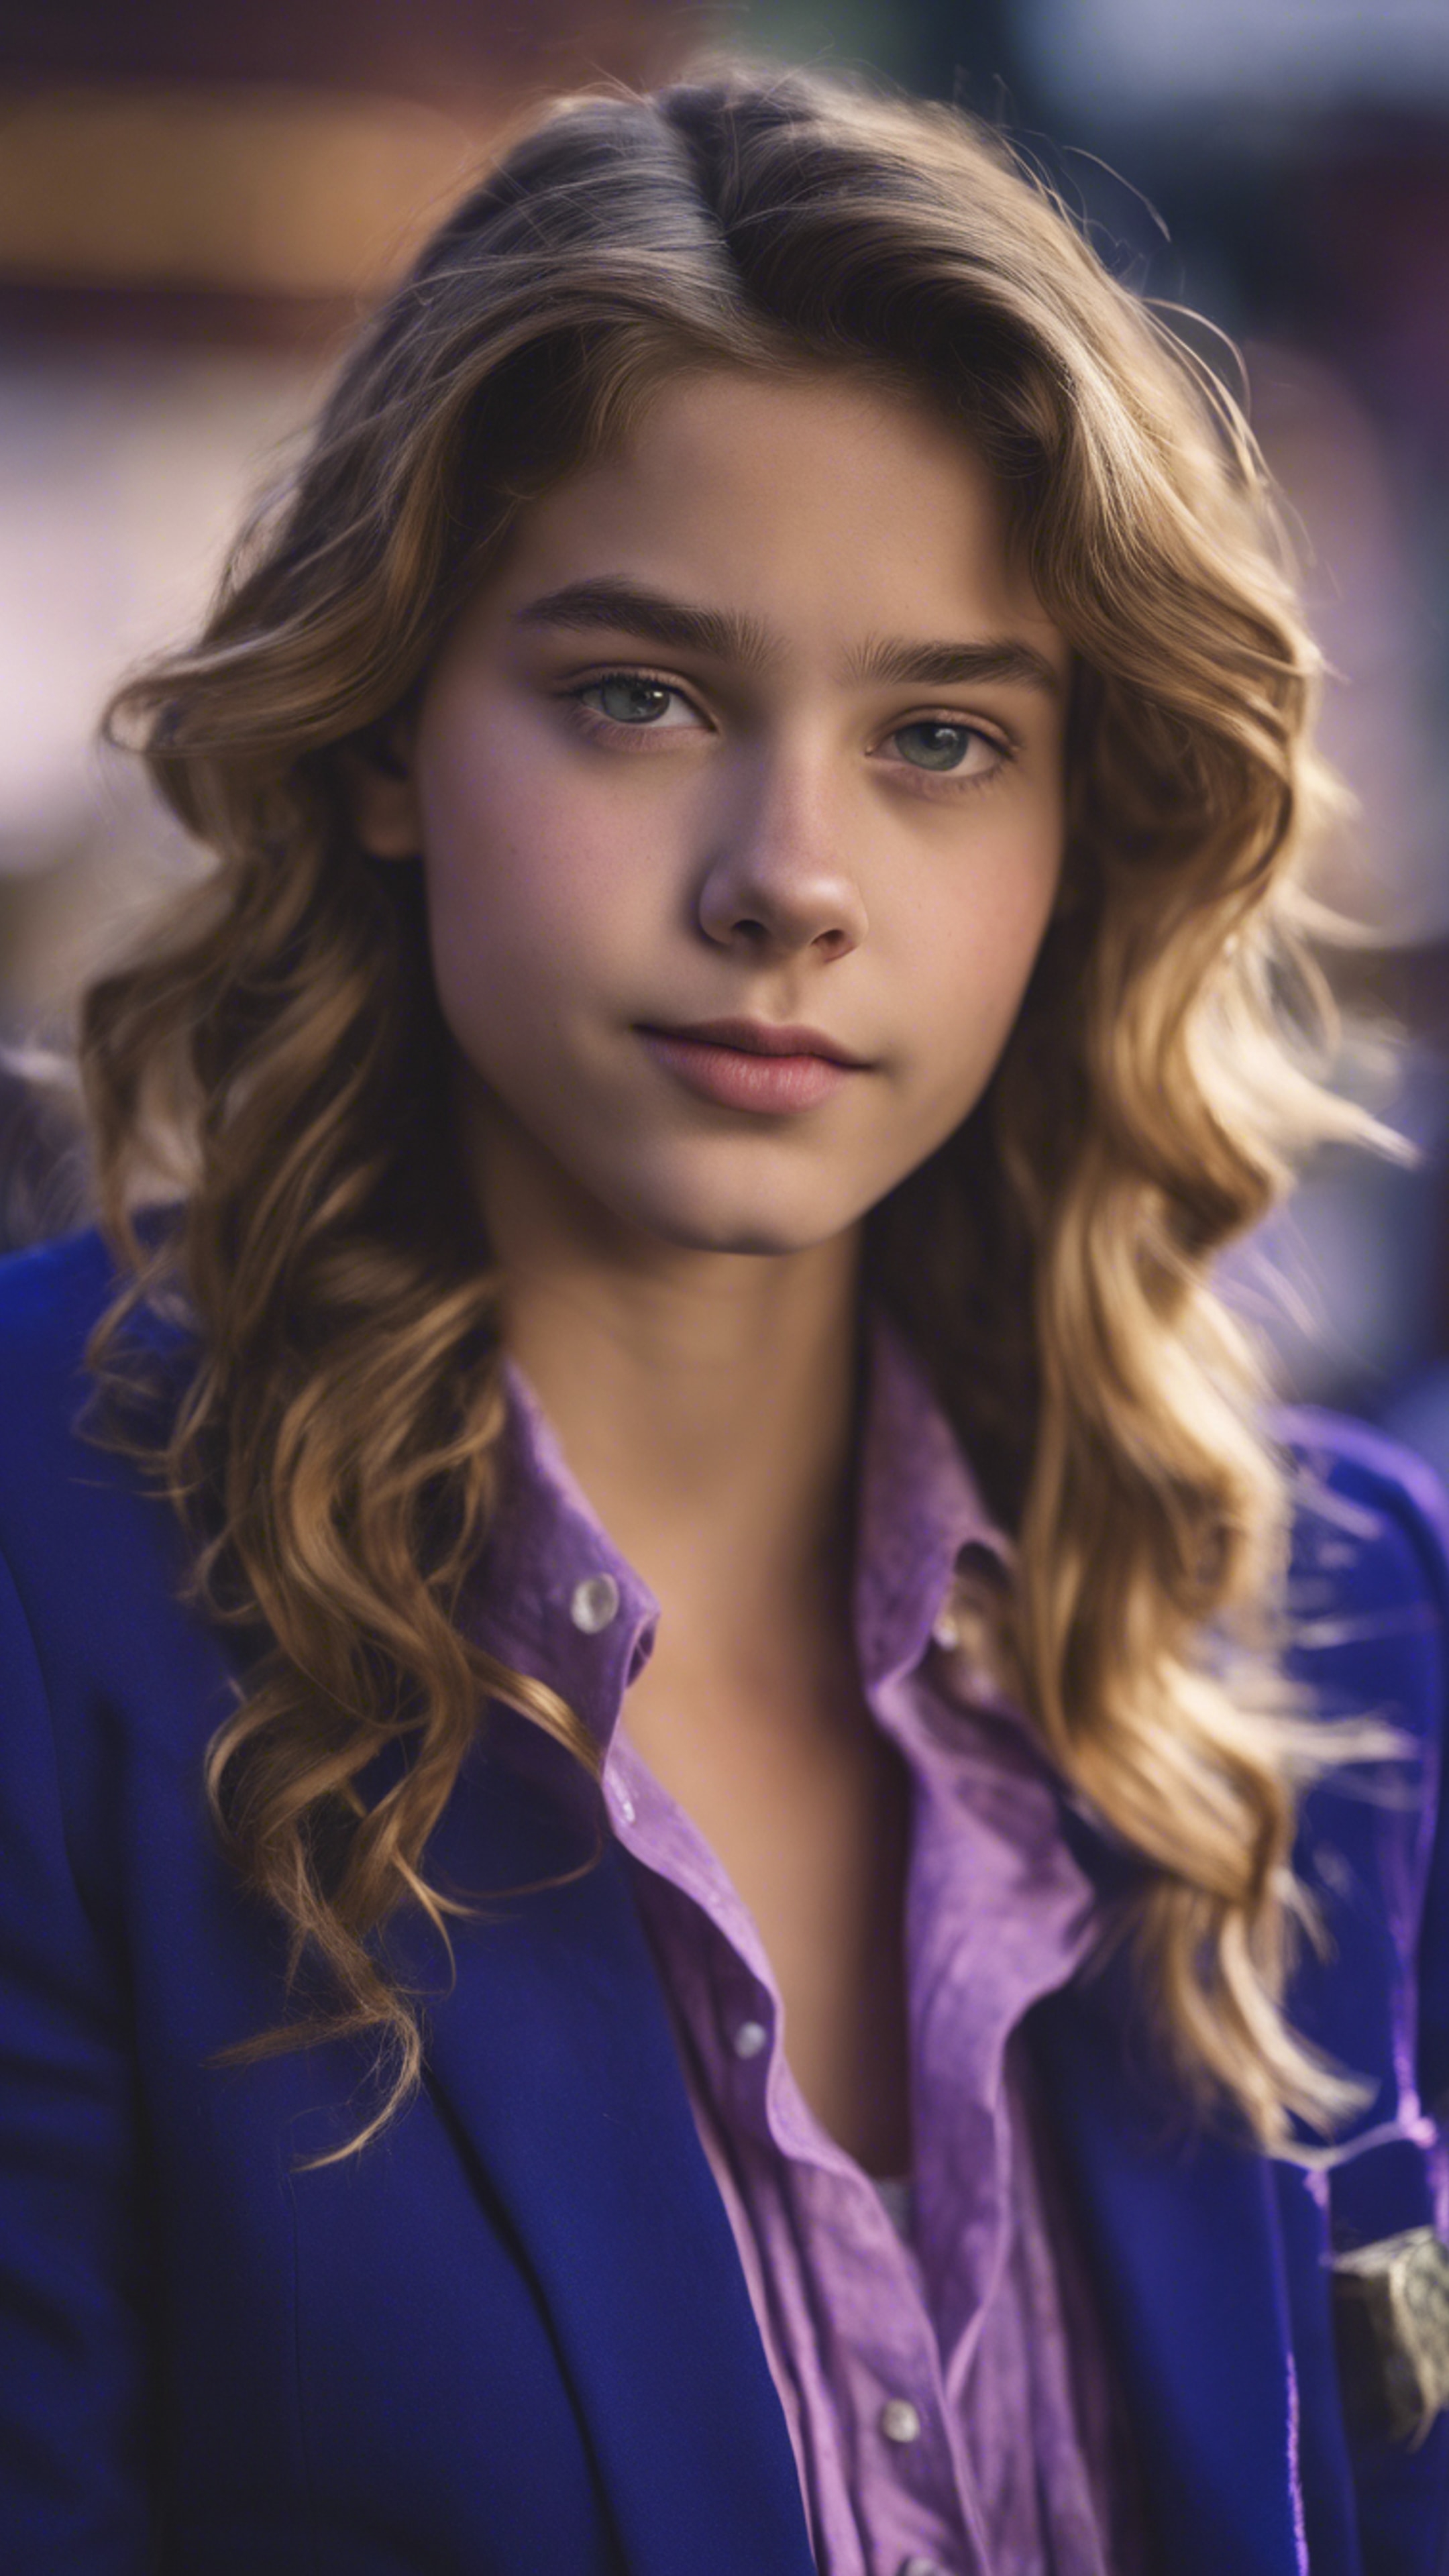 A preppy teenage girl wearing a royal blue blazer with purple button-down shirt. Tapeta[785e4ff270ea4e79b652]